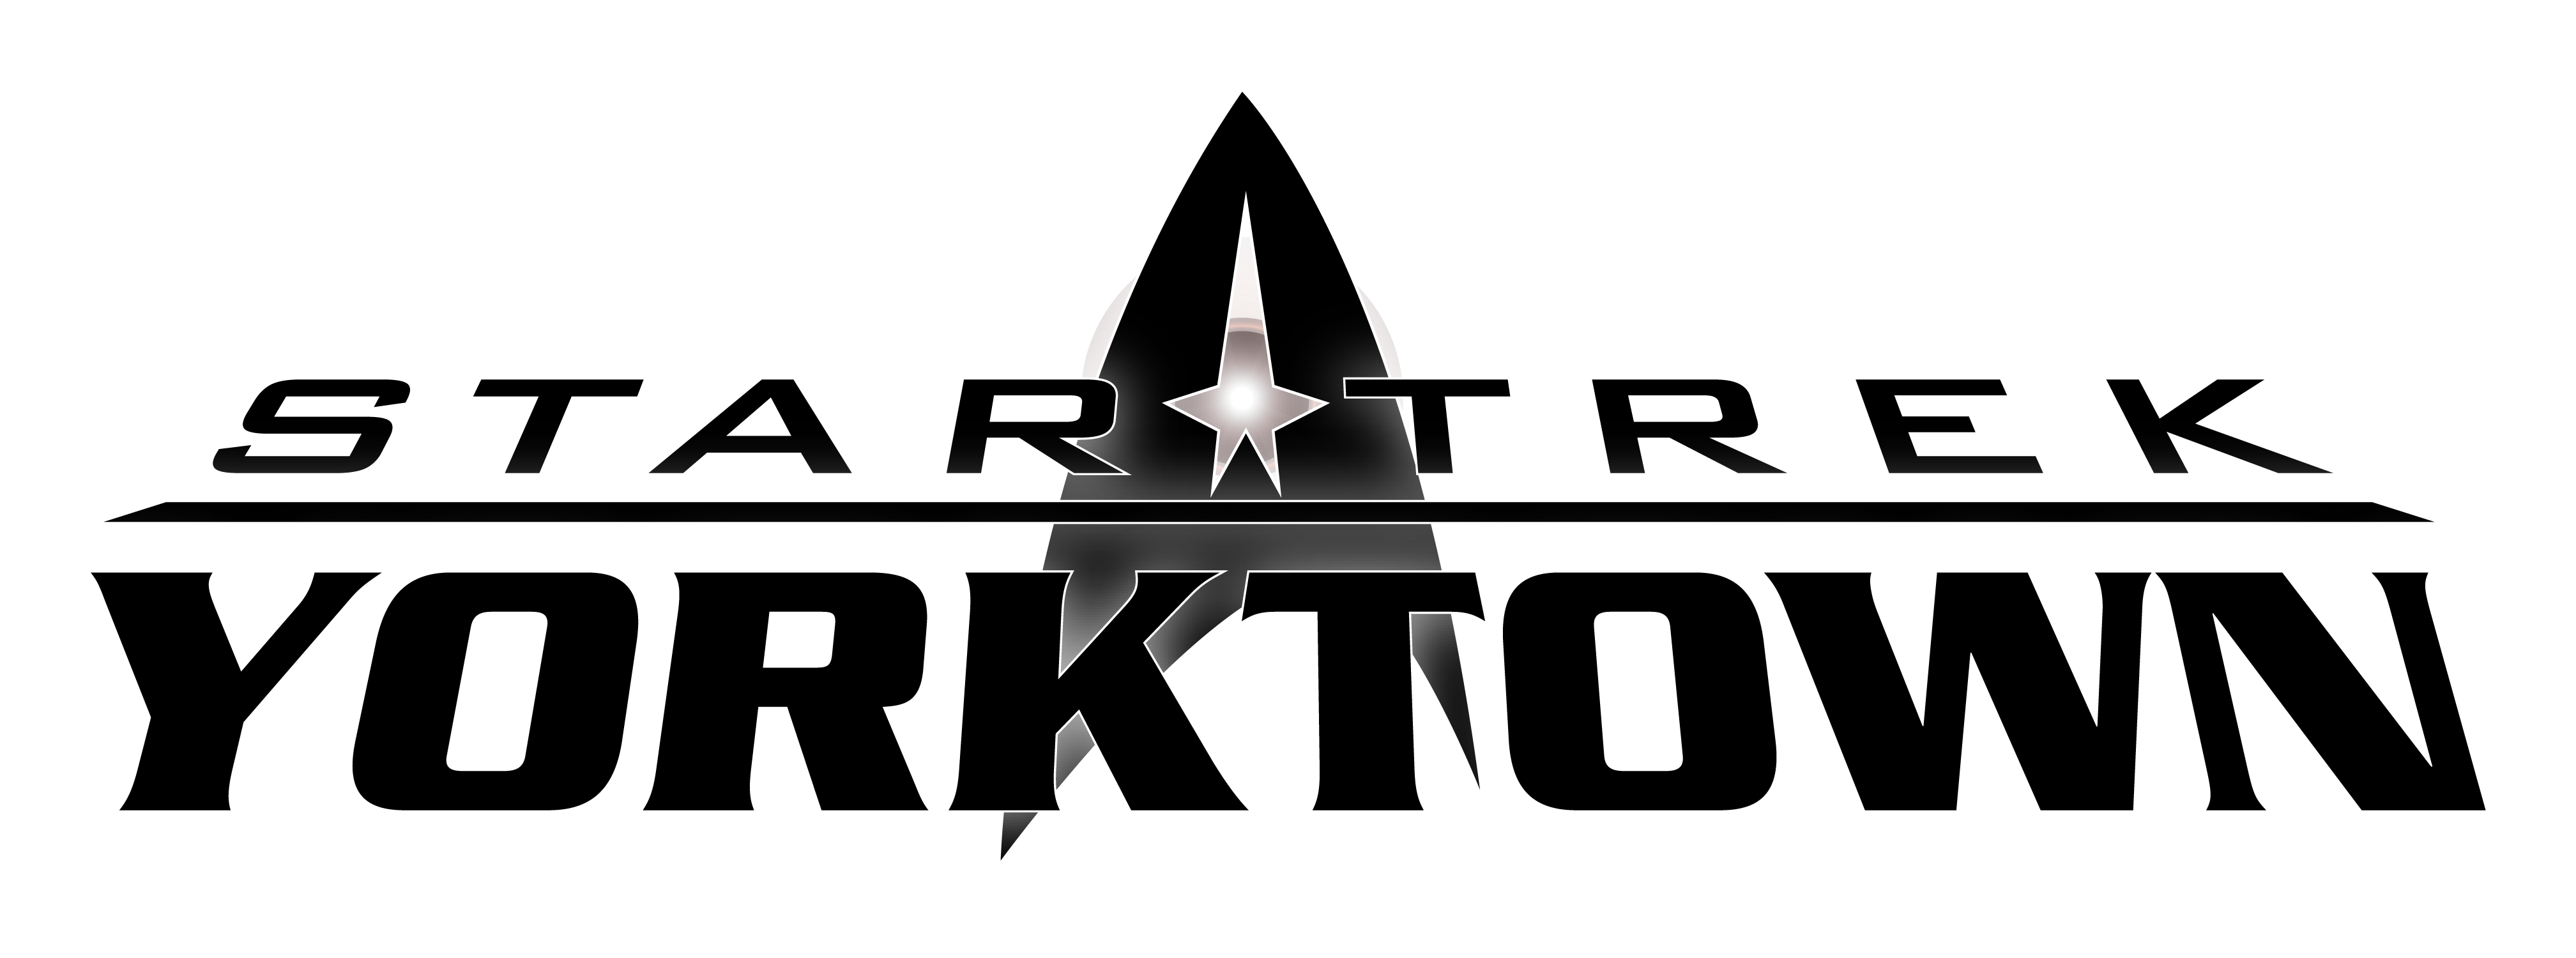 Star_Trek_Yorktown_Logo_PNG.png